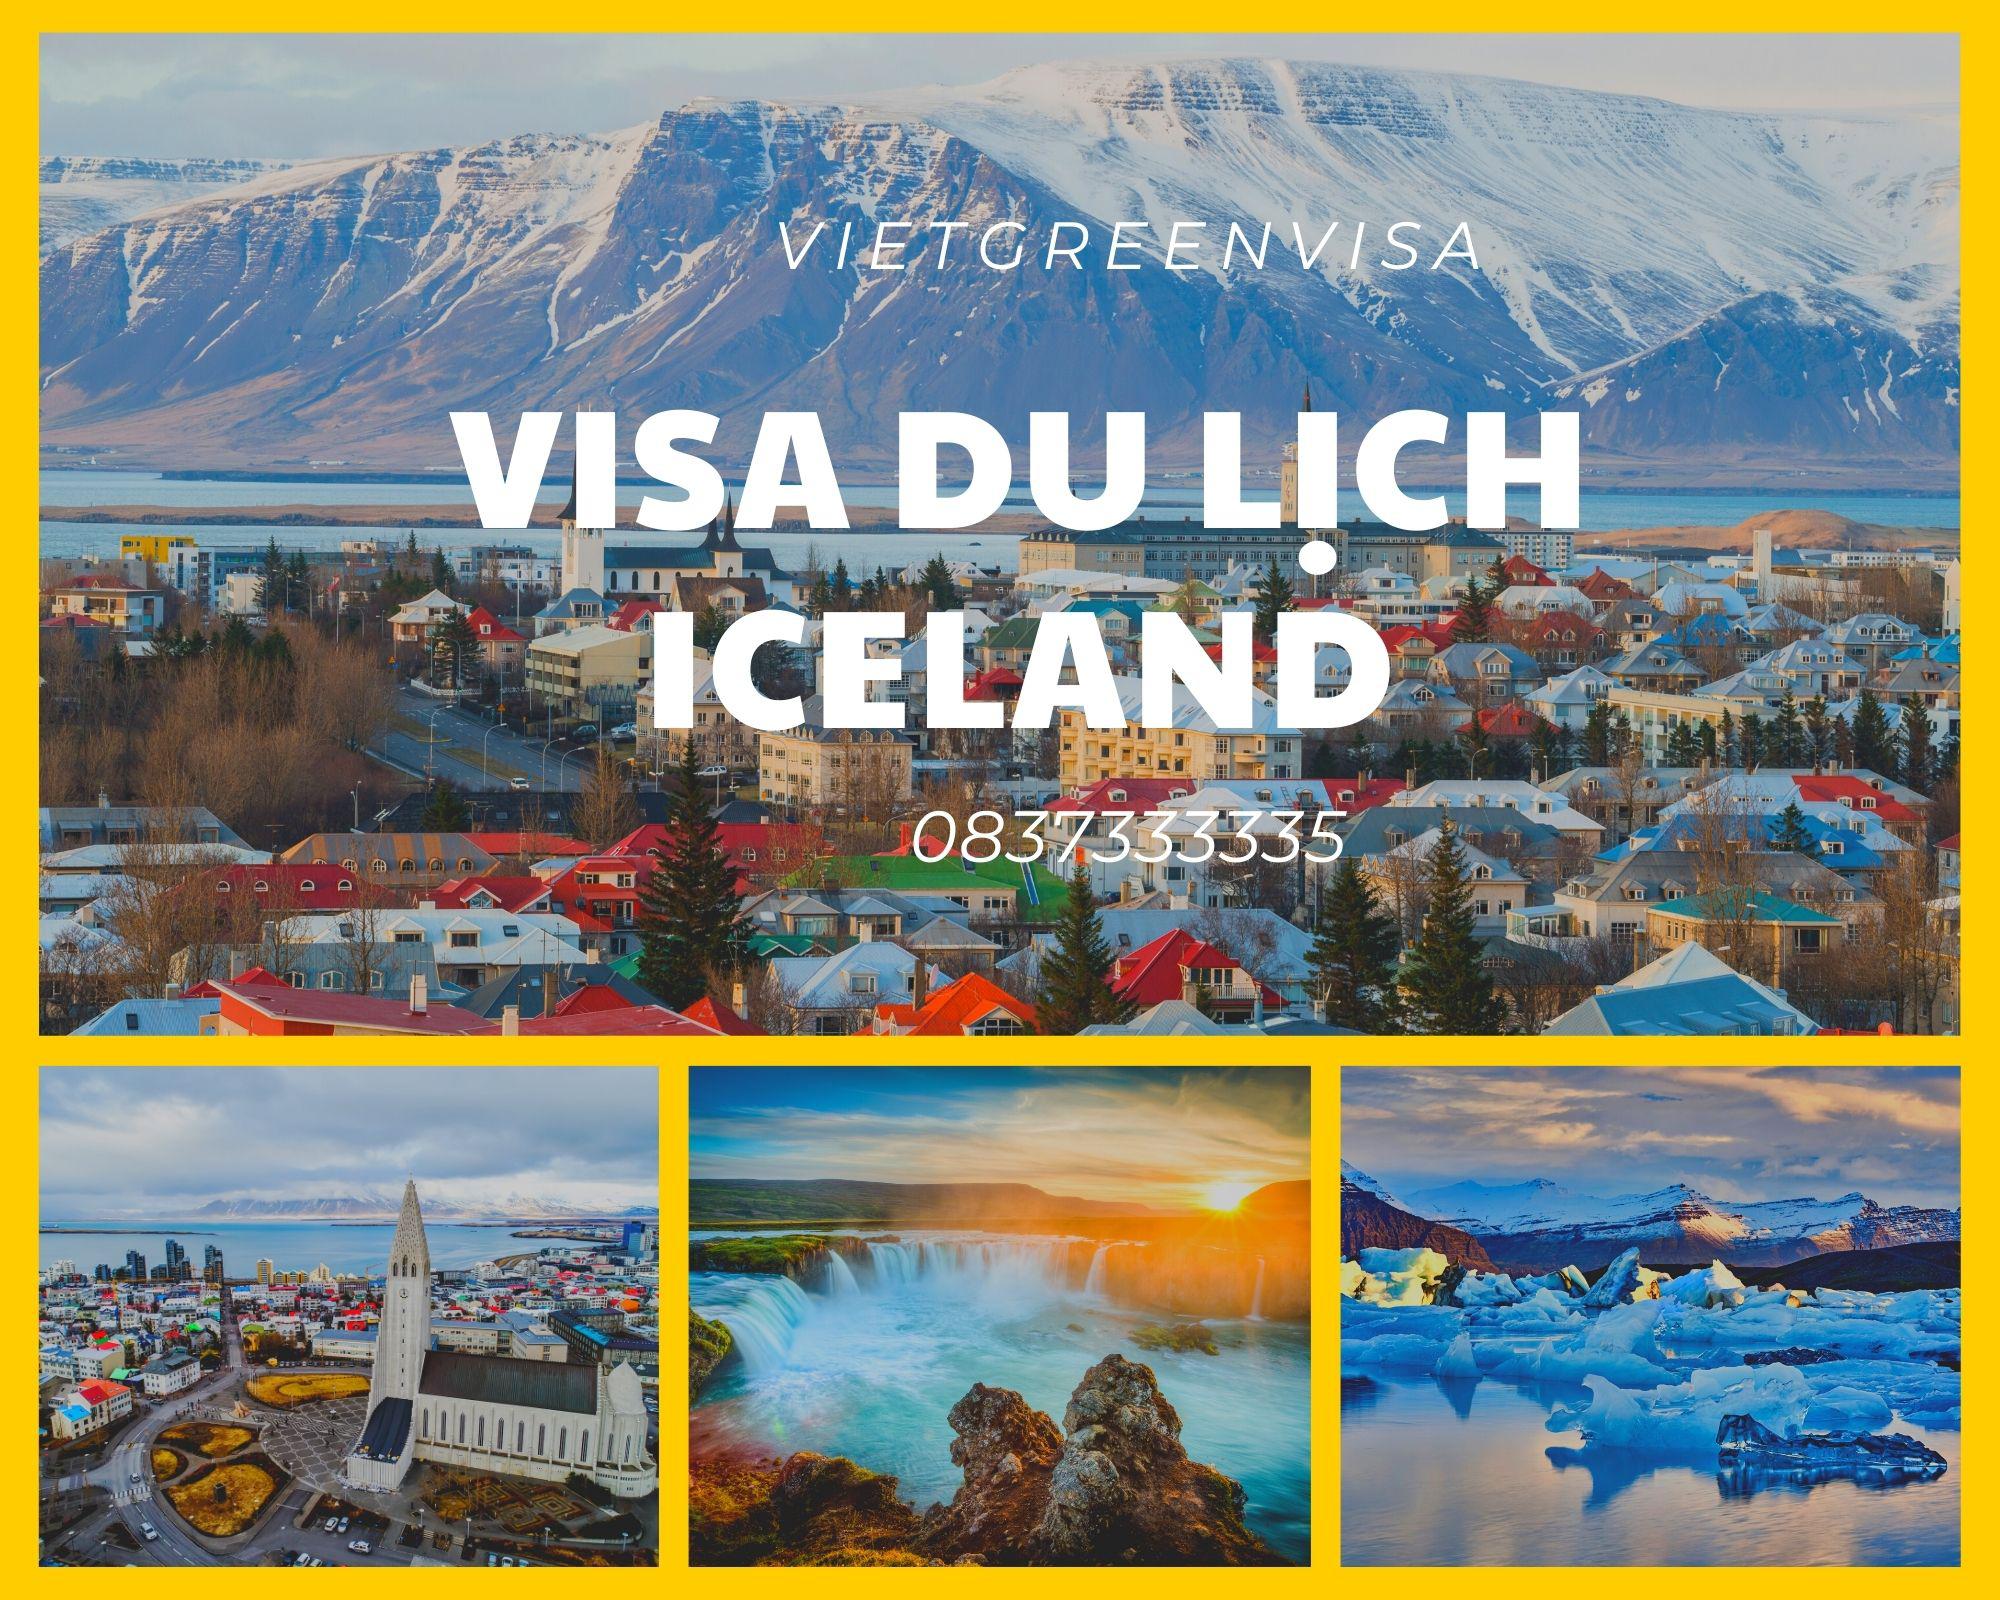 Hỗ trợ làm visa đi du lịch Iceland nhanh chóng